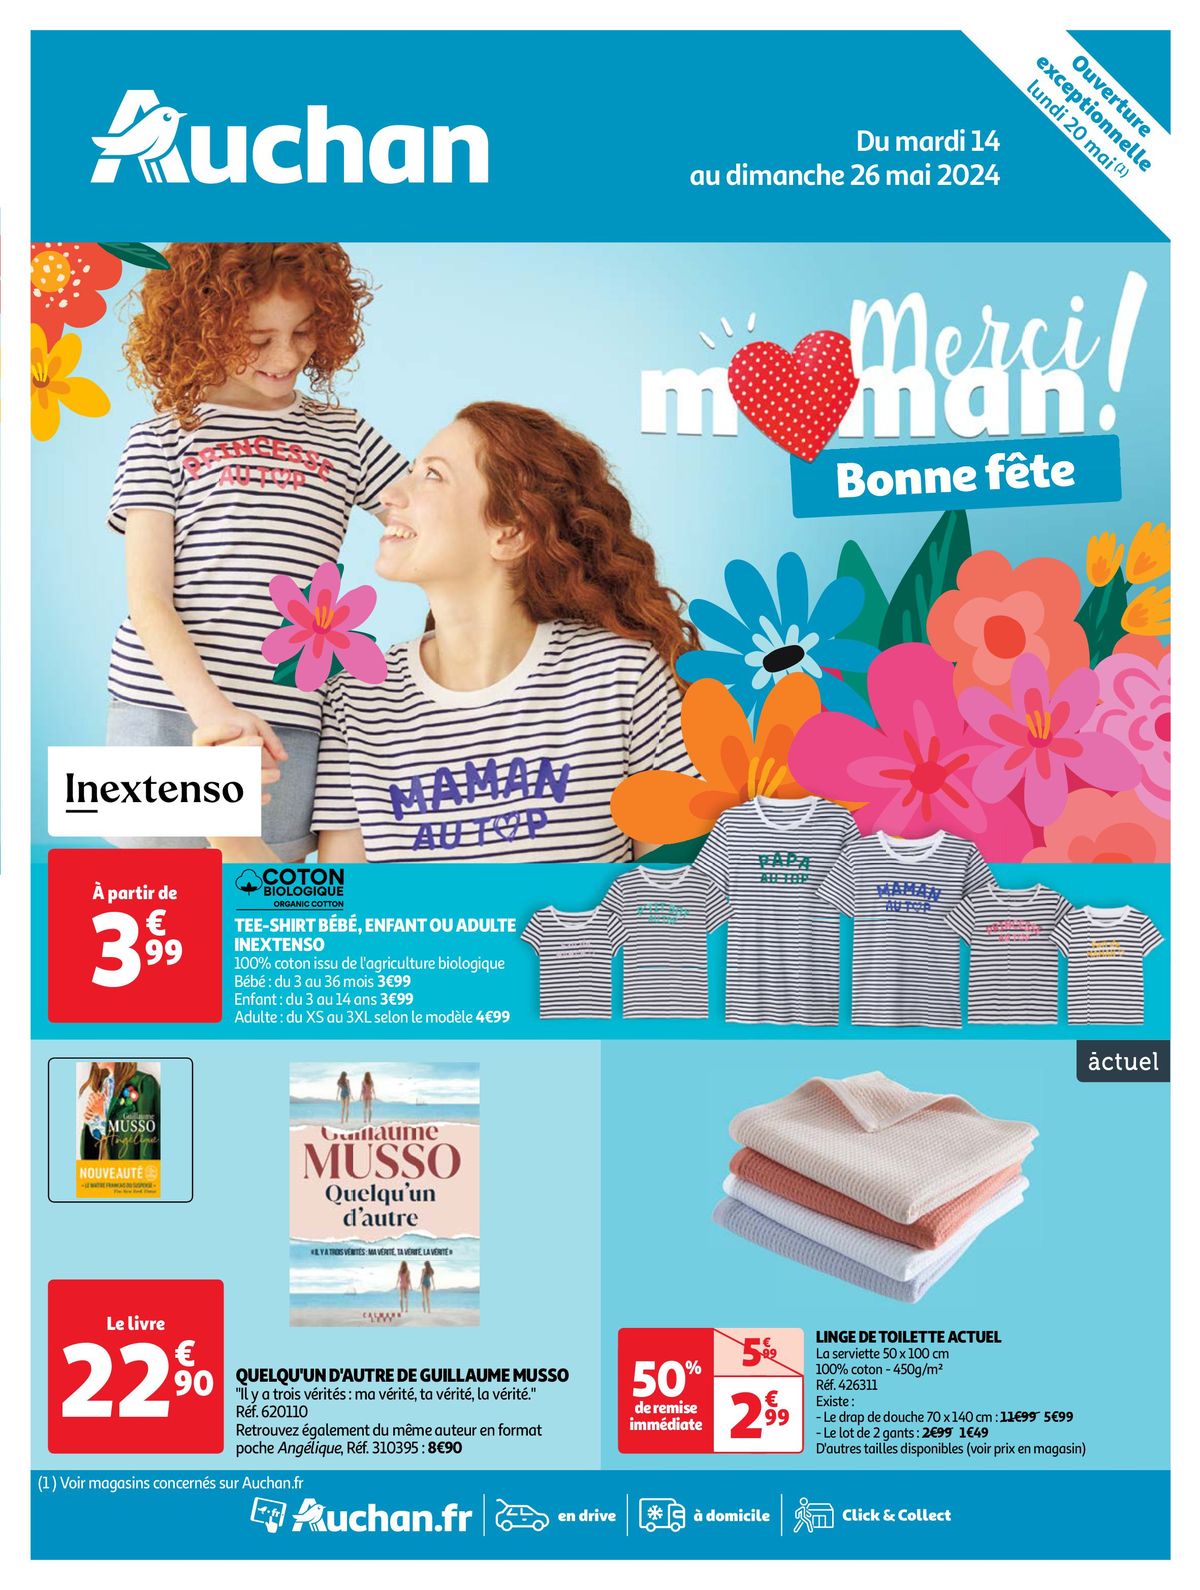 Catalogue Merci maman ! Bonne fête, page 00001